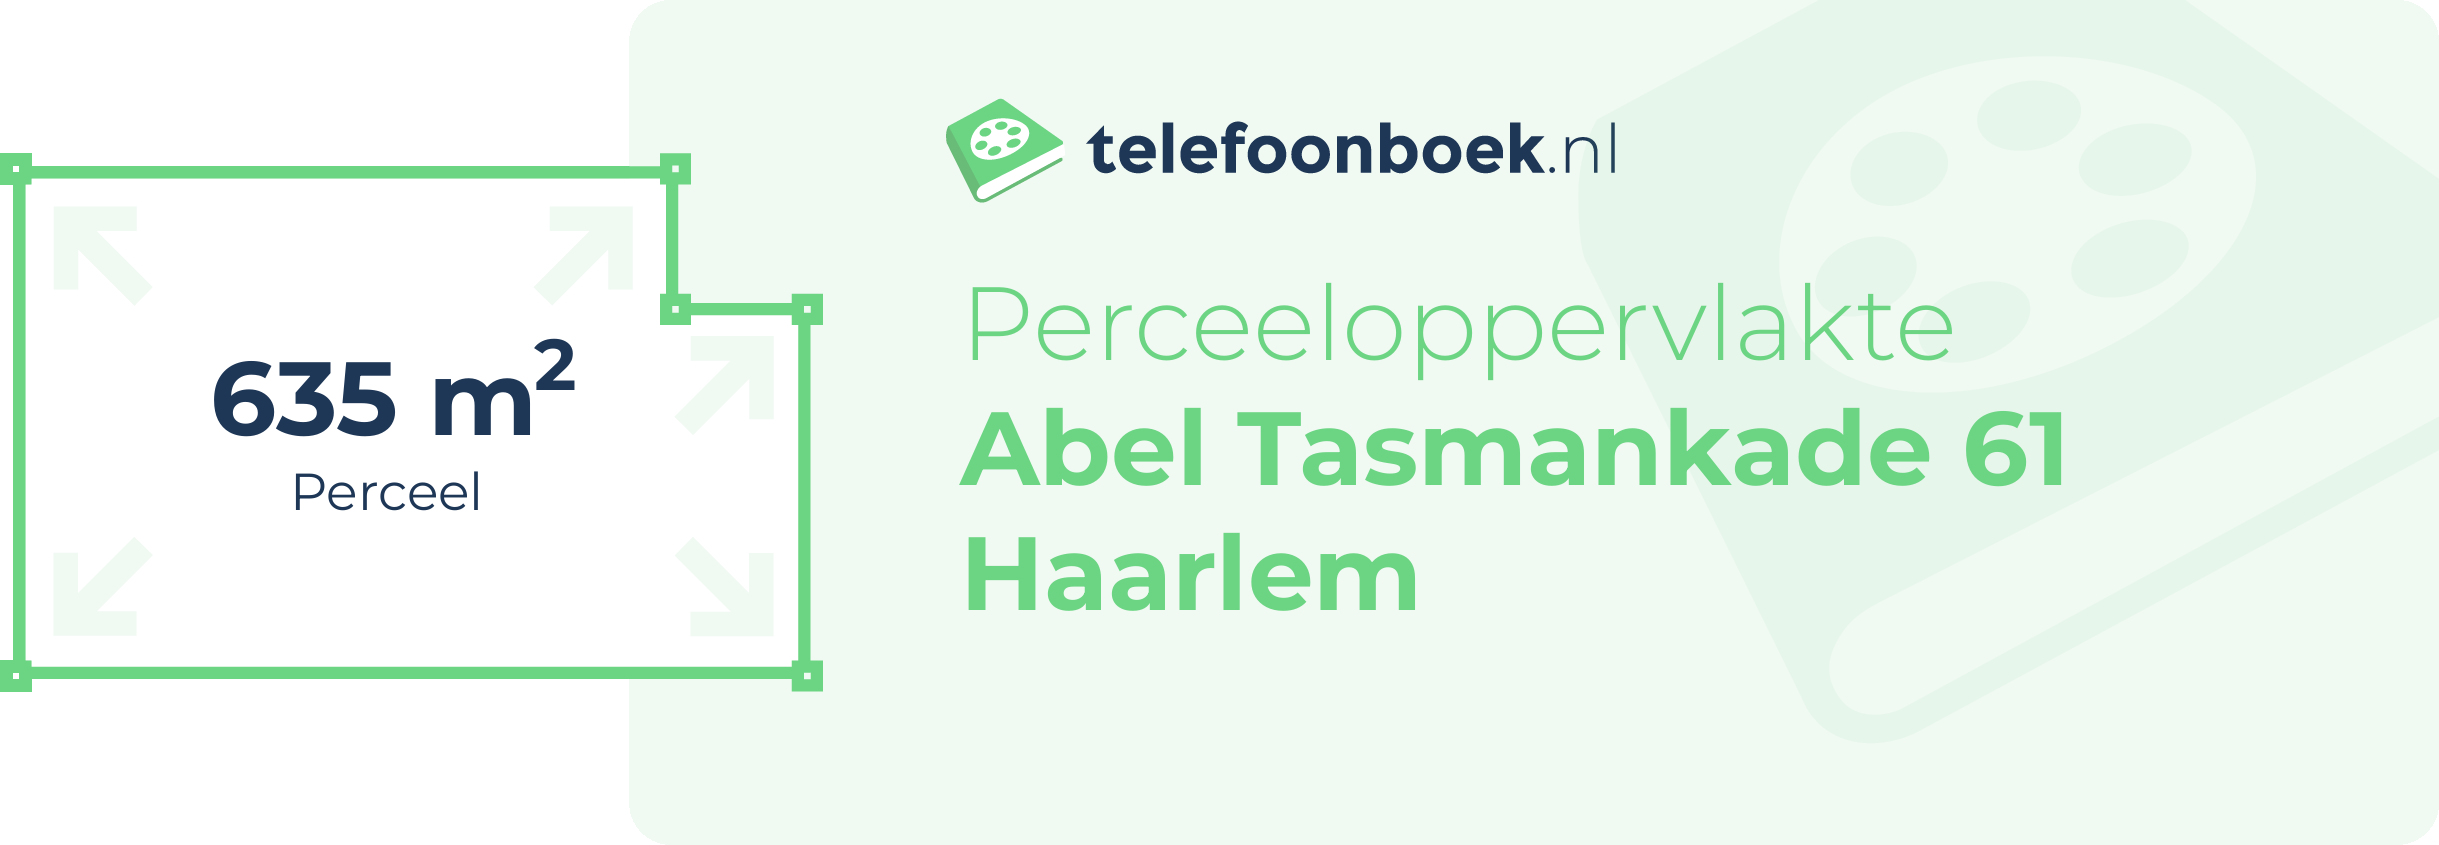 Perceeloppervlakte Abel Tasmankade 61 Haarlem